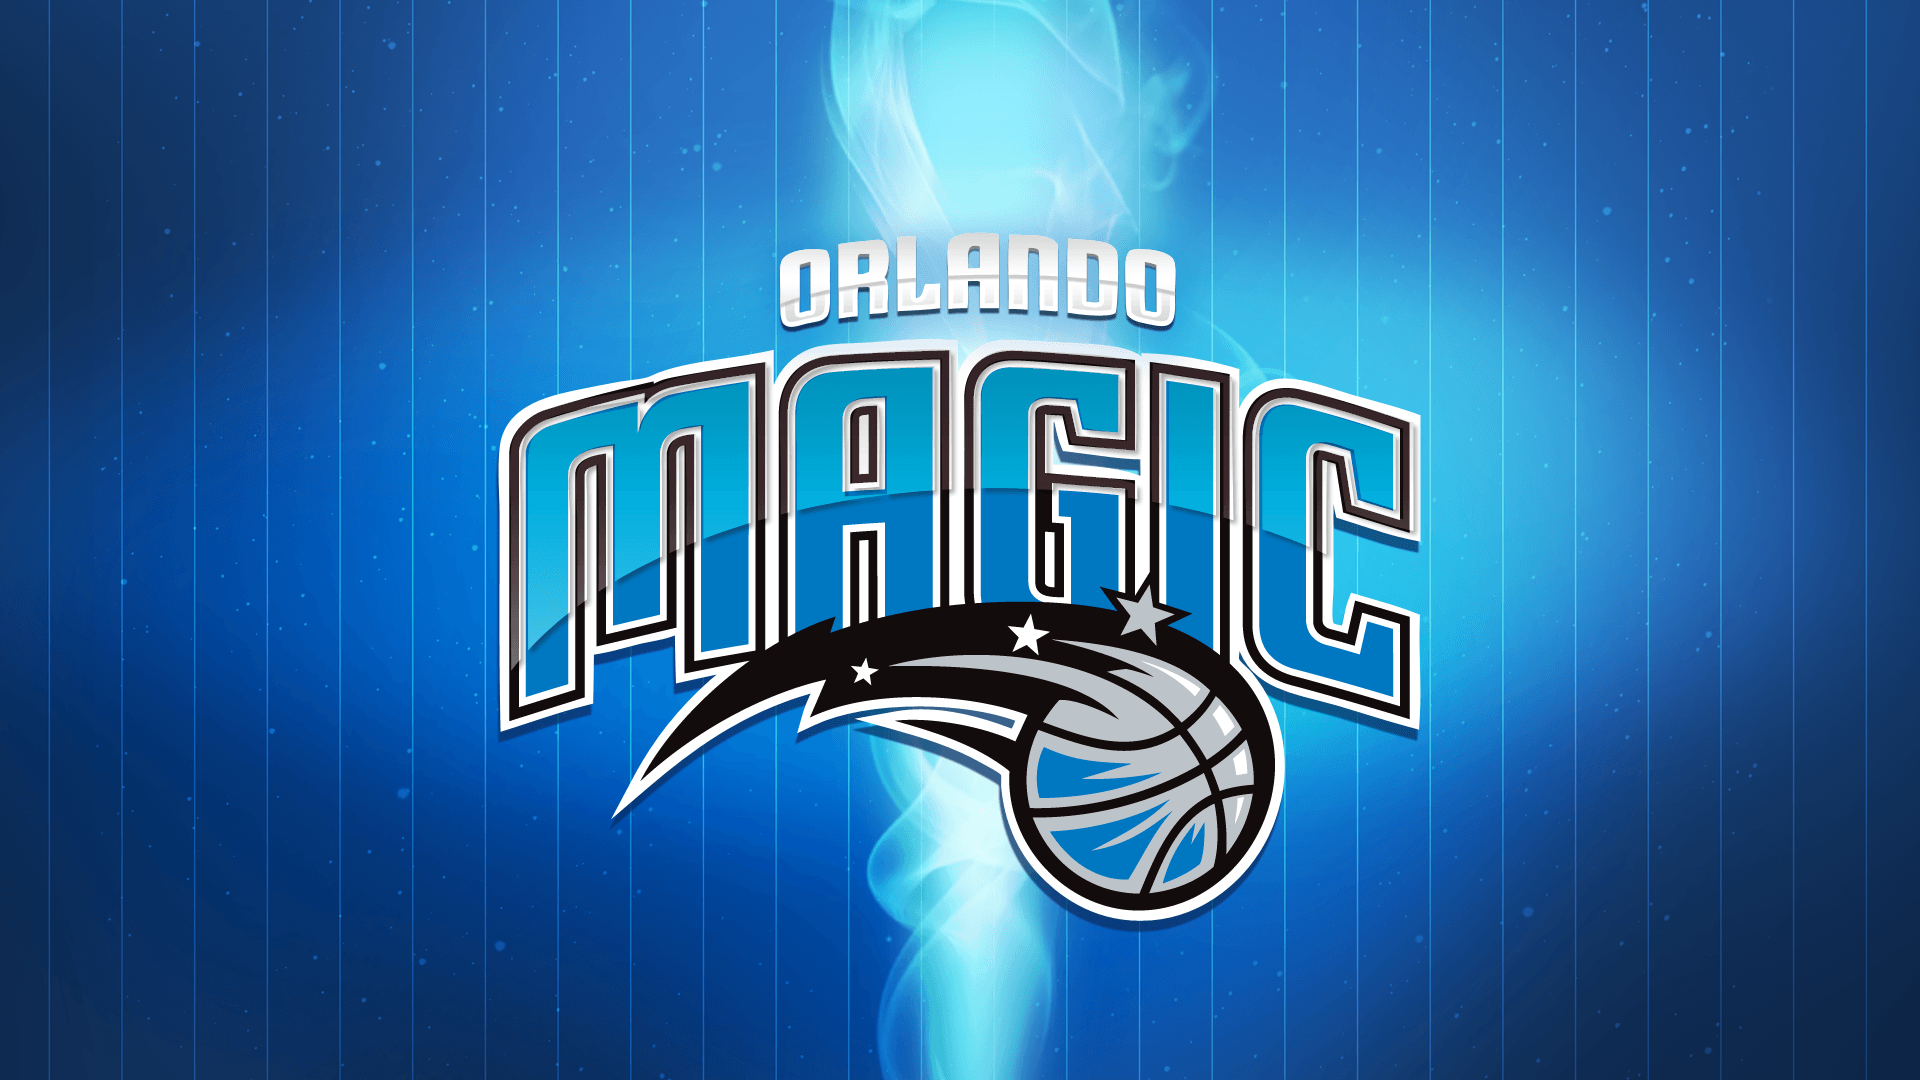 ORLANDO MAGIC nba basketball wallpaperx1080